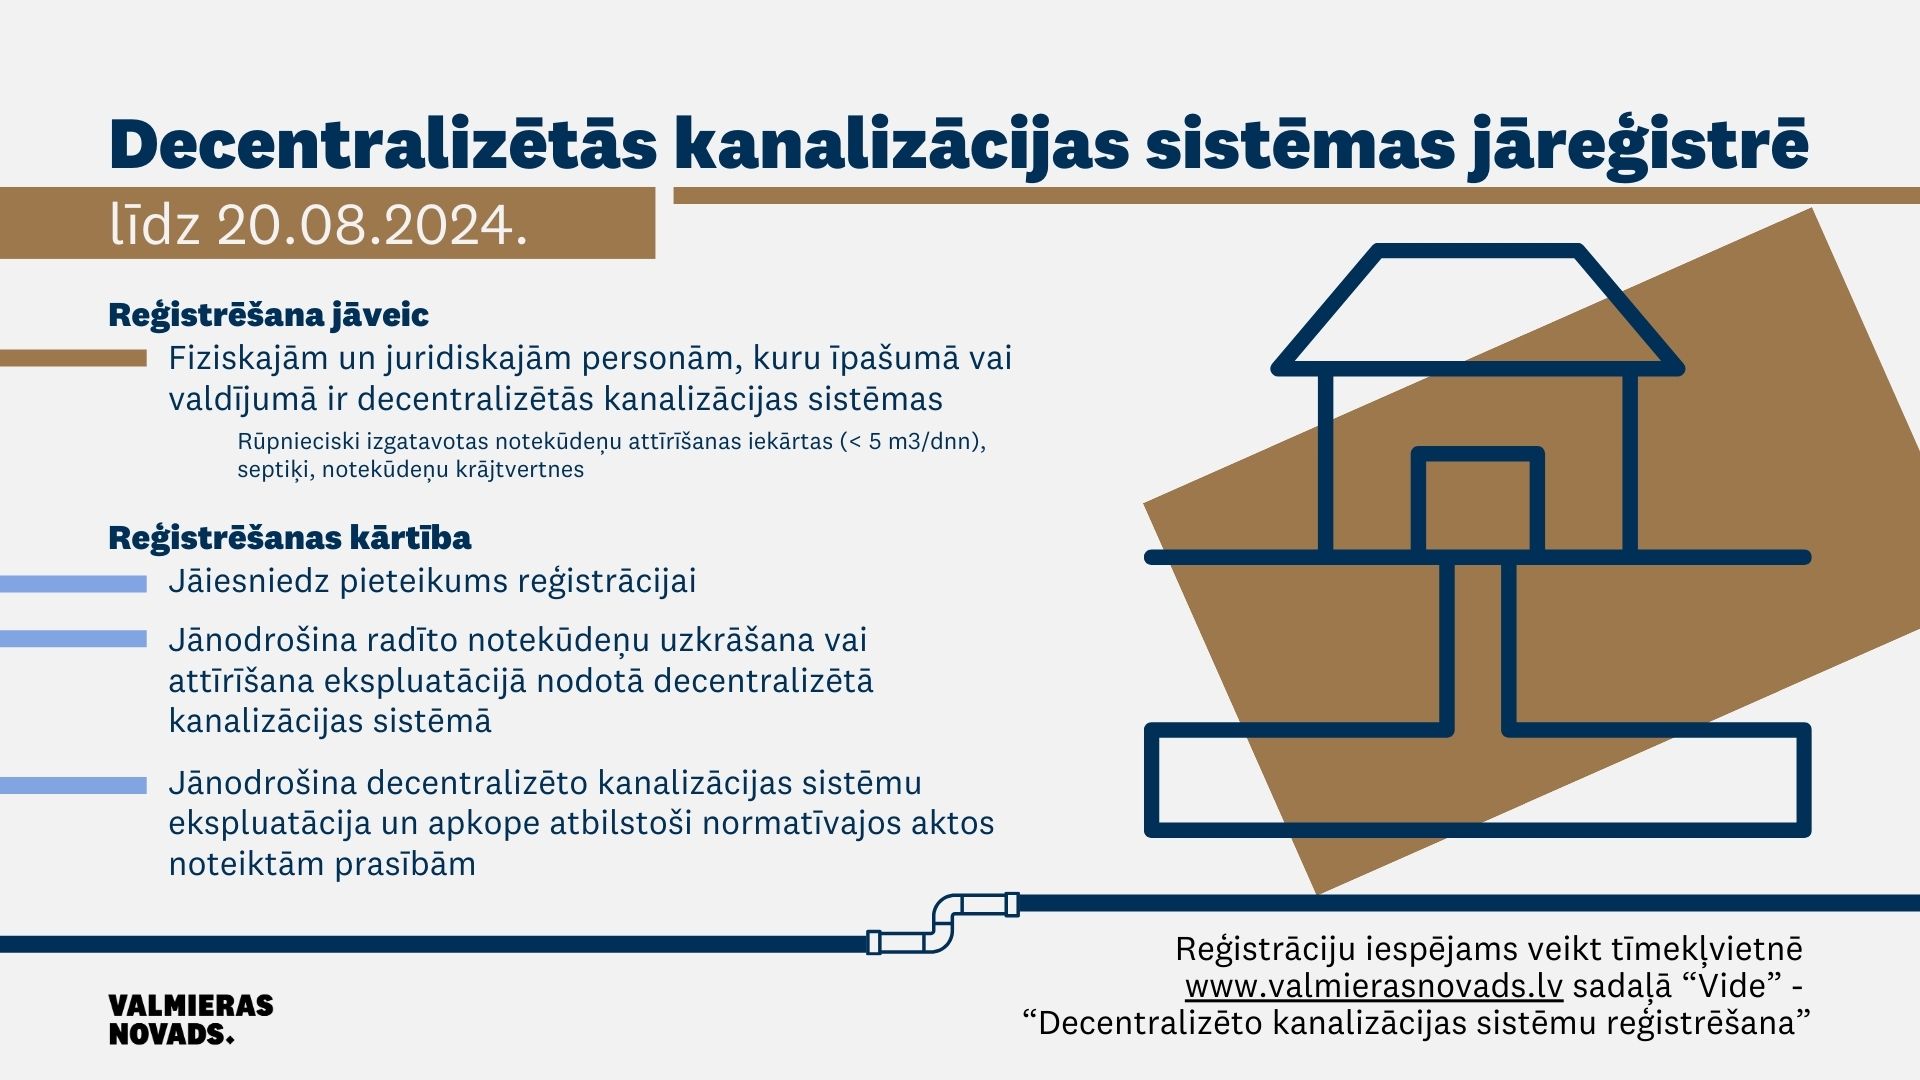 2022. gada 10. decembrī stājās spēkā Valmieras novada pašvaldības domes saistošie noteikumi nr. 69 “Par decentralizēto kanalizācijas sistēmu apsaimniekošanas un uzskaites kārtību Valmieras novadā”, kas nosaka notekūdeņu apsaimniekošanas prasības nekustamā īpašuma īpašnieka vai tiesiskā valdījumā esošajās decentralizētās kanalizācijas sistēmās, kuras nav pievienotas sabiedrisko ūdenssaimniecības pakalpojumu sniedzēja centralizētajai kanalizācijas sistēmai, un šādu sistēmu reģistrācijas kārtību Valmieras novadā. Tai skaitā, nosaka Valmieras novada pašvaldības ūdenssaimniecības pakalpojumu sniedzēju decentralizēto kanalizācijas sistēmu reģistrācijas un apkalpes teritorijas. Aicinām iedzīvotājus iepazīties ar izveidoto reģistrācijas kārtību un veikt decentralizētās kanalizācijas sistēmas reģistrēšanu līdz 2024. gada 20. augustam. Jautājumos par decentralizēto kanalizācijas sistēmu reģistrēšanu var sazināties, zvanot uz tālr. 64292253 vai rakstot uz e-pastu liga.zvirbule@valmierasnovads.lv.